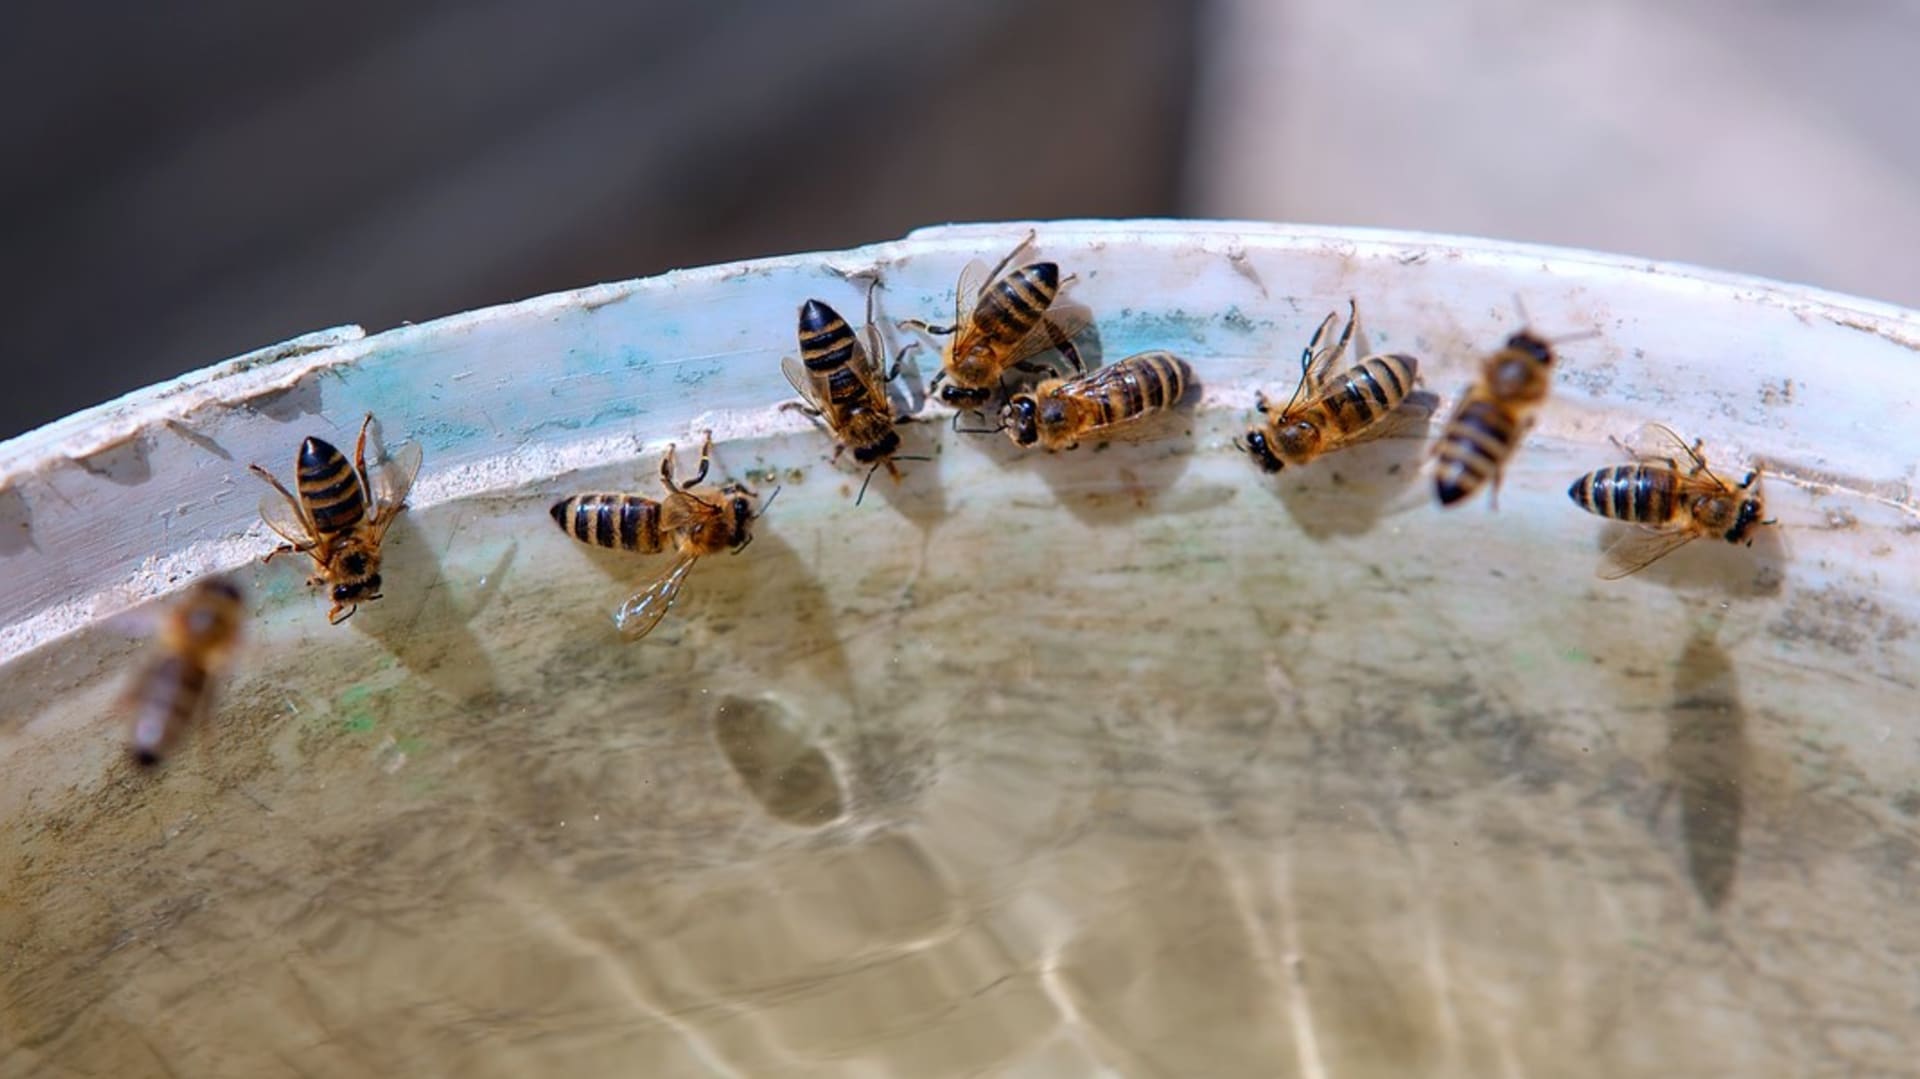  každý z nás může přispět aspoň trochu k tomu, aby bylo včelám lépe. Například dávat jim ven misky s vodou.